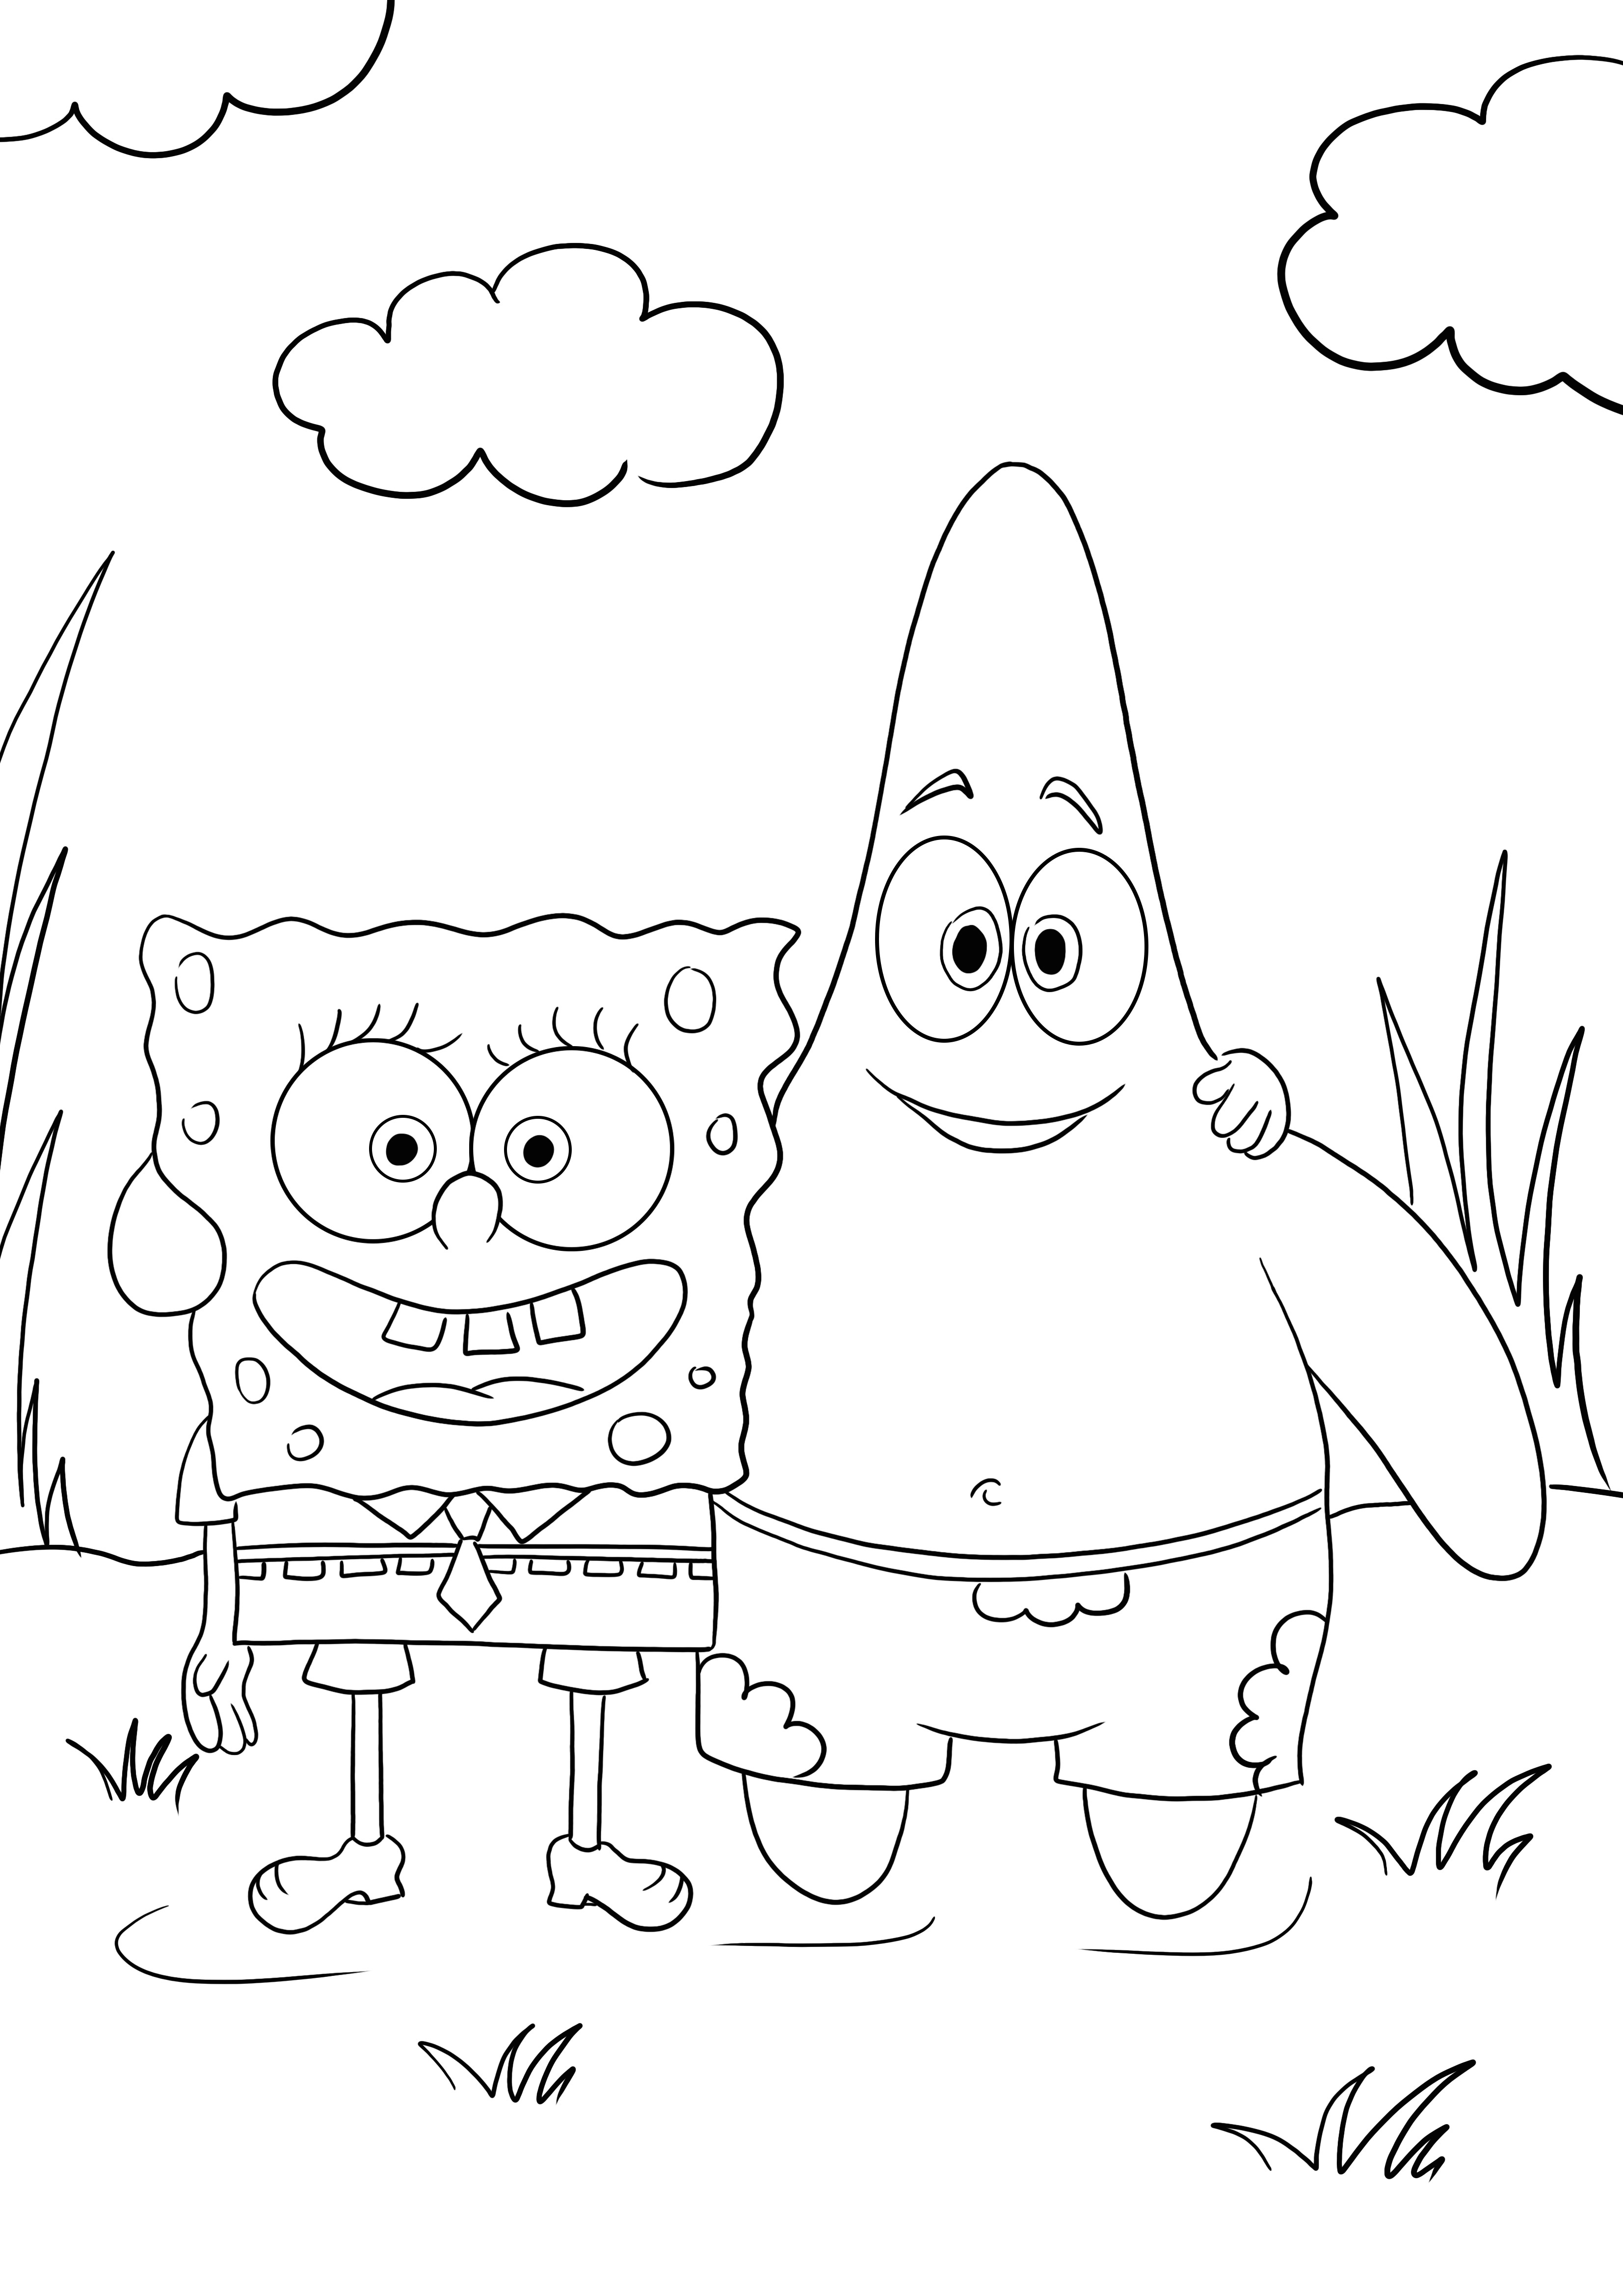 Sponge Bob e il suo migliore amico Patrick colorano e scaricano immagini gratis